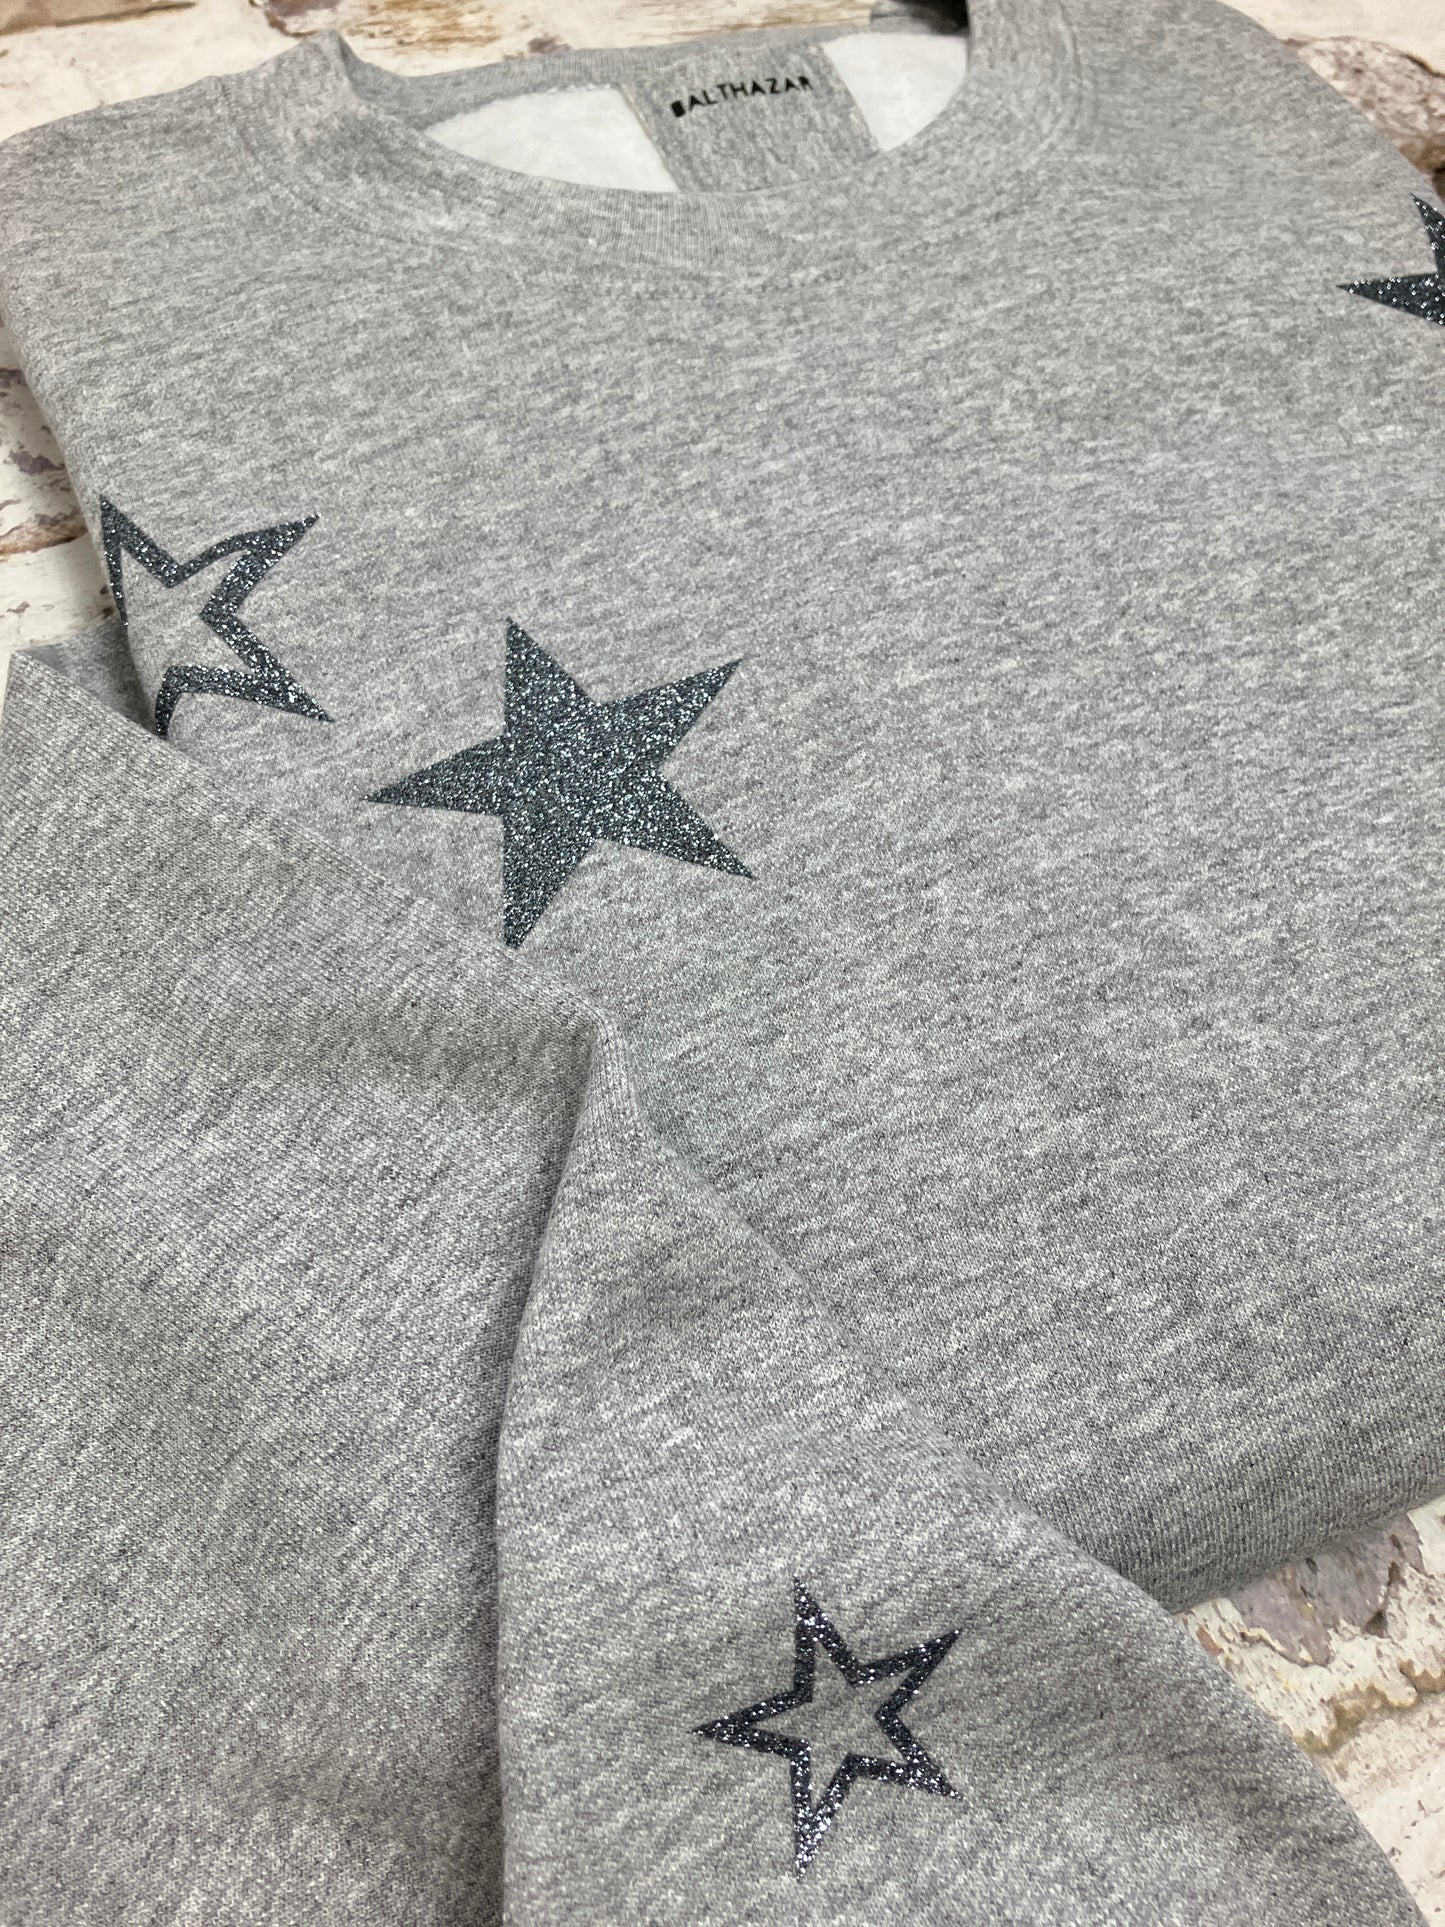 All the stars sweatshirt- customisable